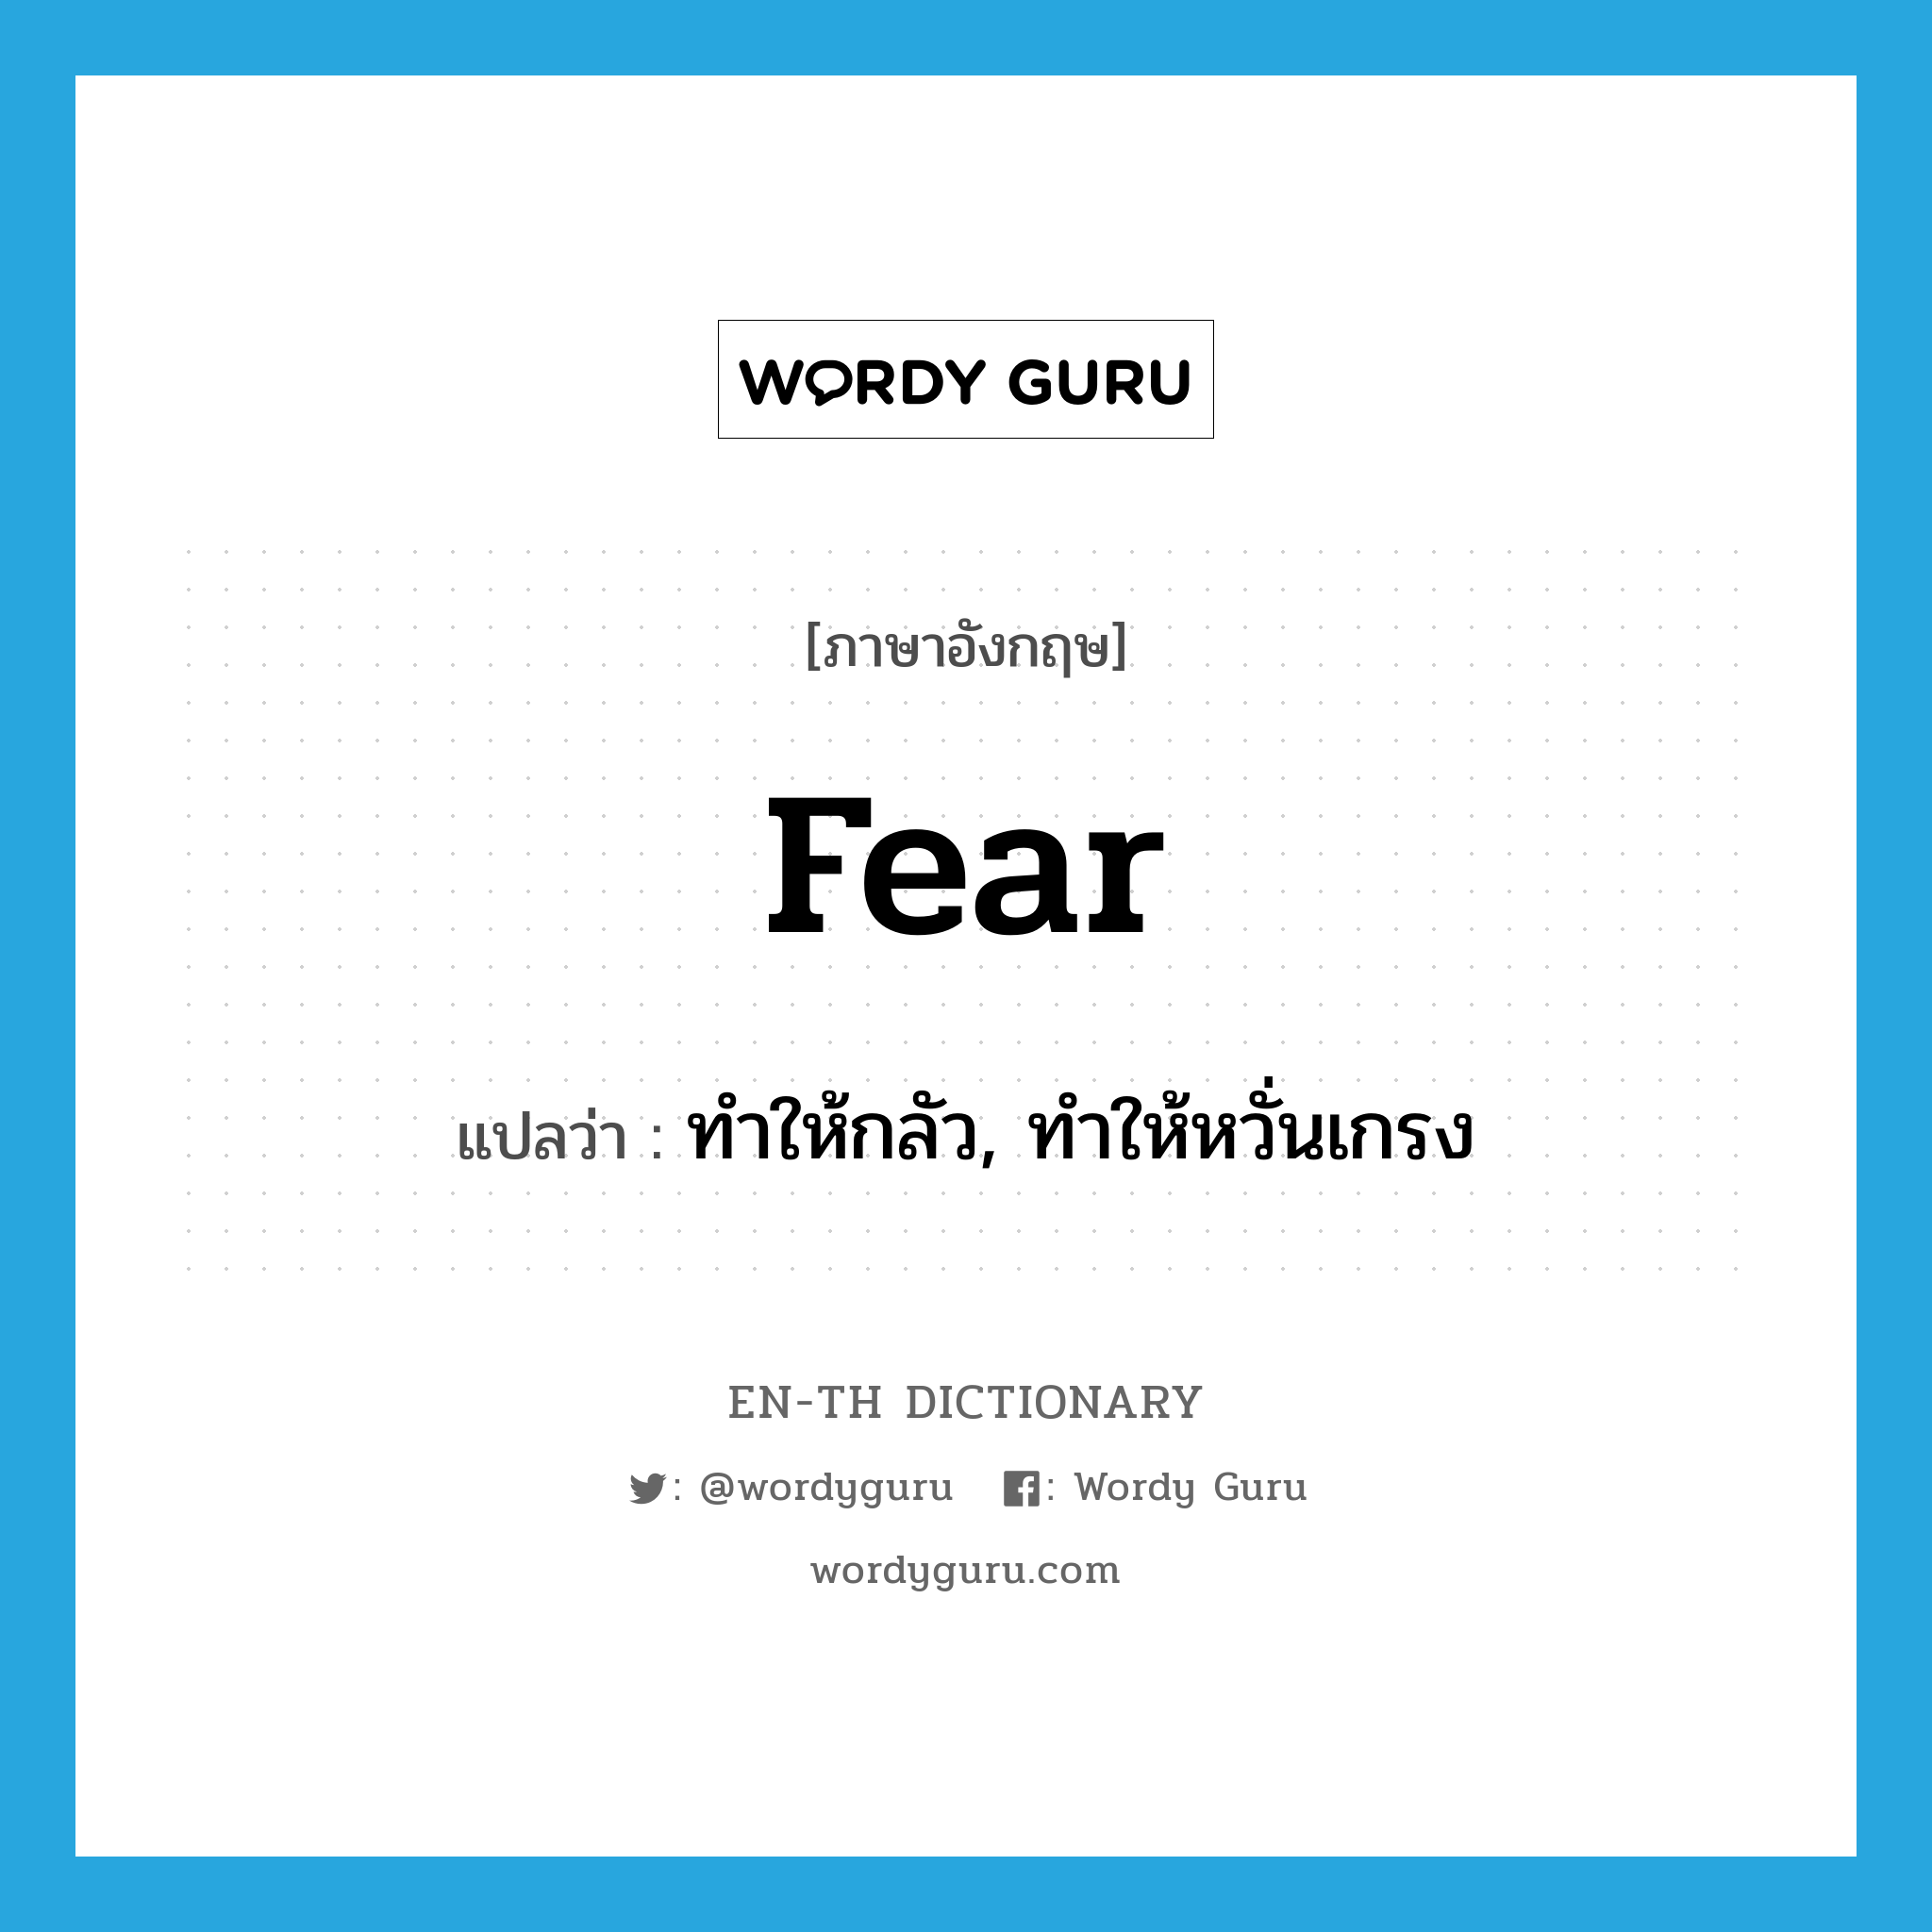 ทำให้กลัว, ทำให้หวั่นเกรง ภาษาอังกฤษ?, คำศัพท์ภาษาอังกฤษ ทำให้กลัว, ทำให้หวั่นเกรง แปลว่า fear ประเภท VT หมวด VT